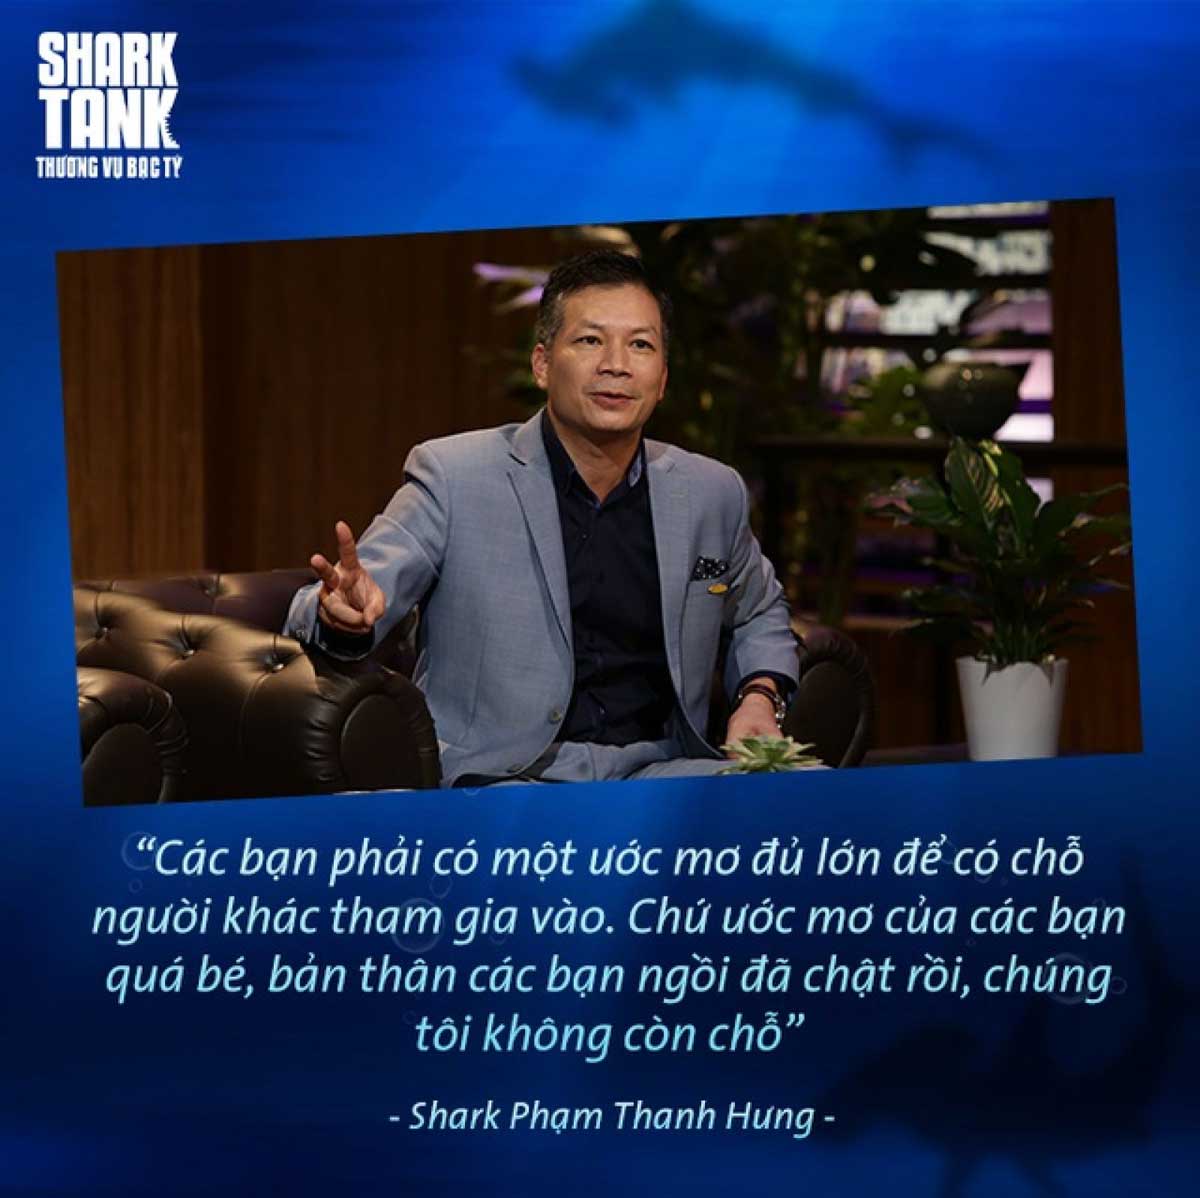 Shark Hưng: Từ chàng kỹ sư cơ khí tới nhà đầu tư danh tiếng Việt Nam - Ảnh 2